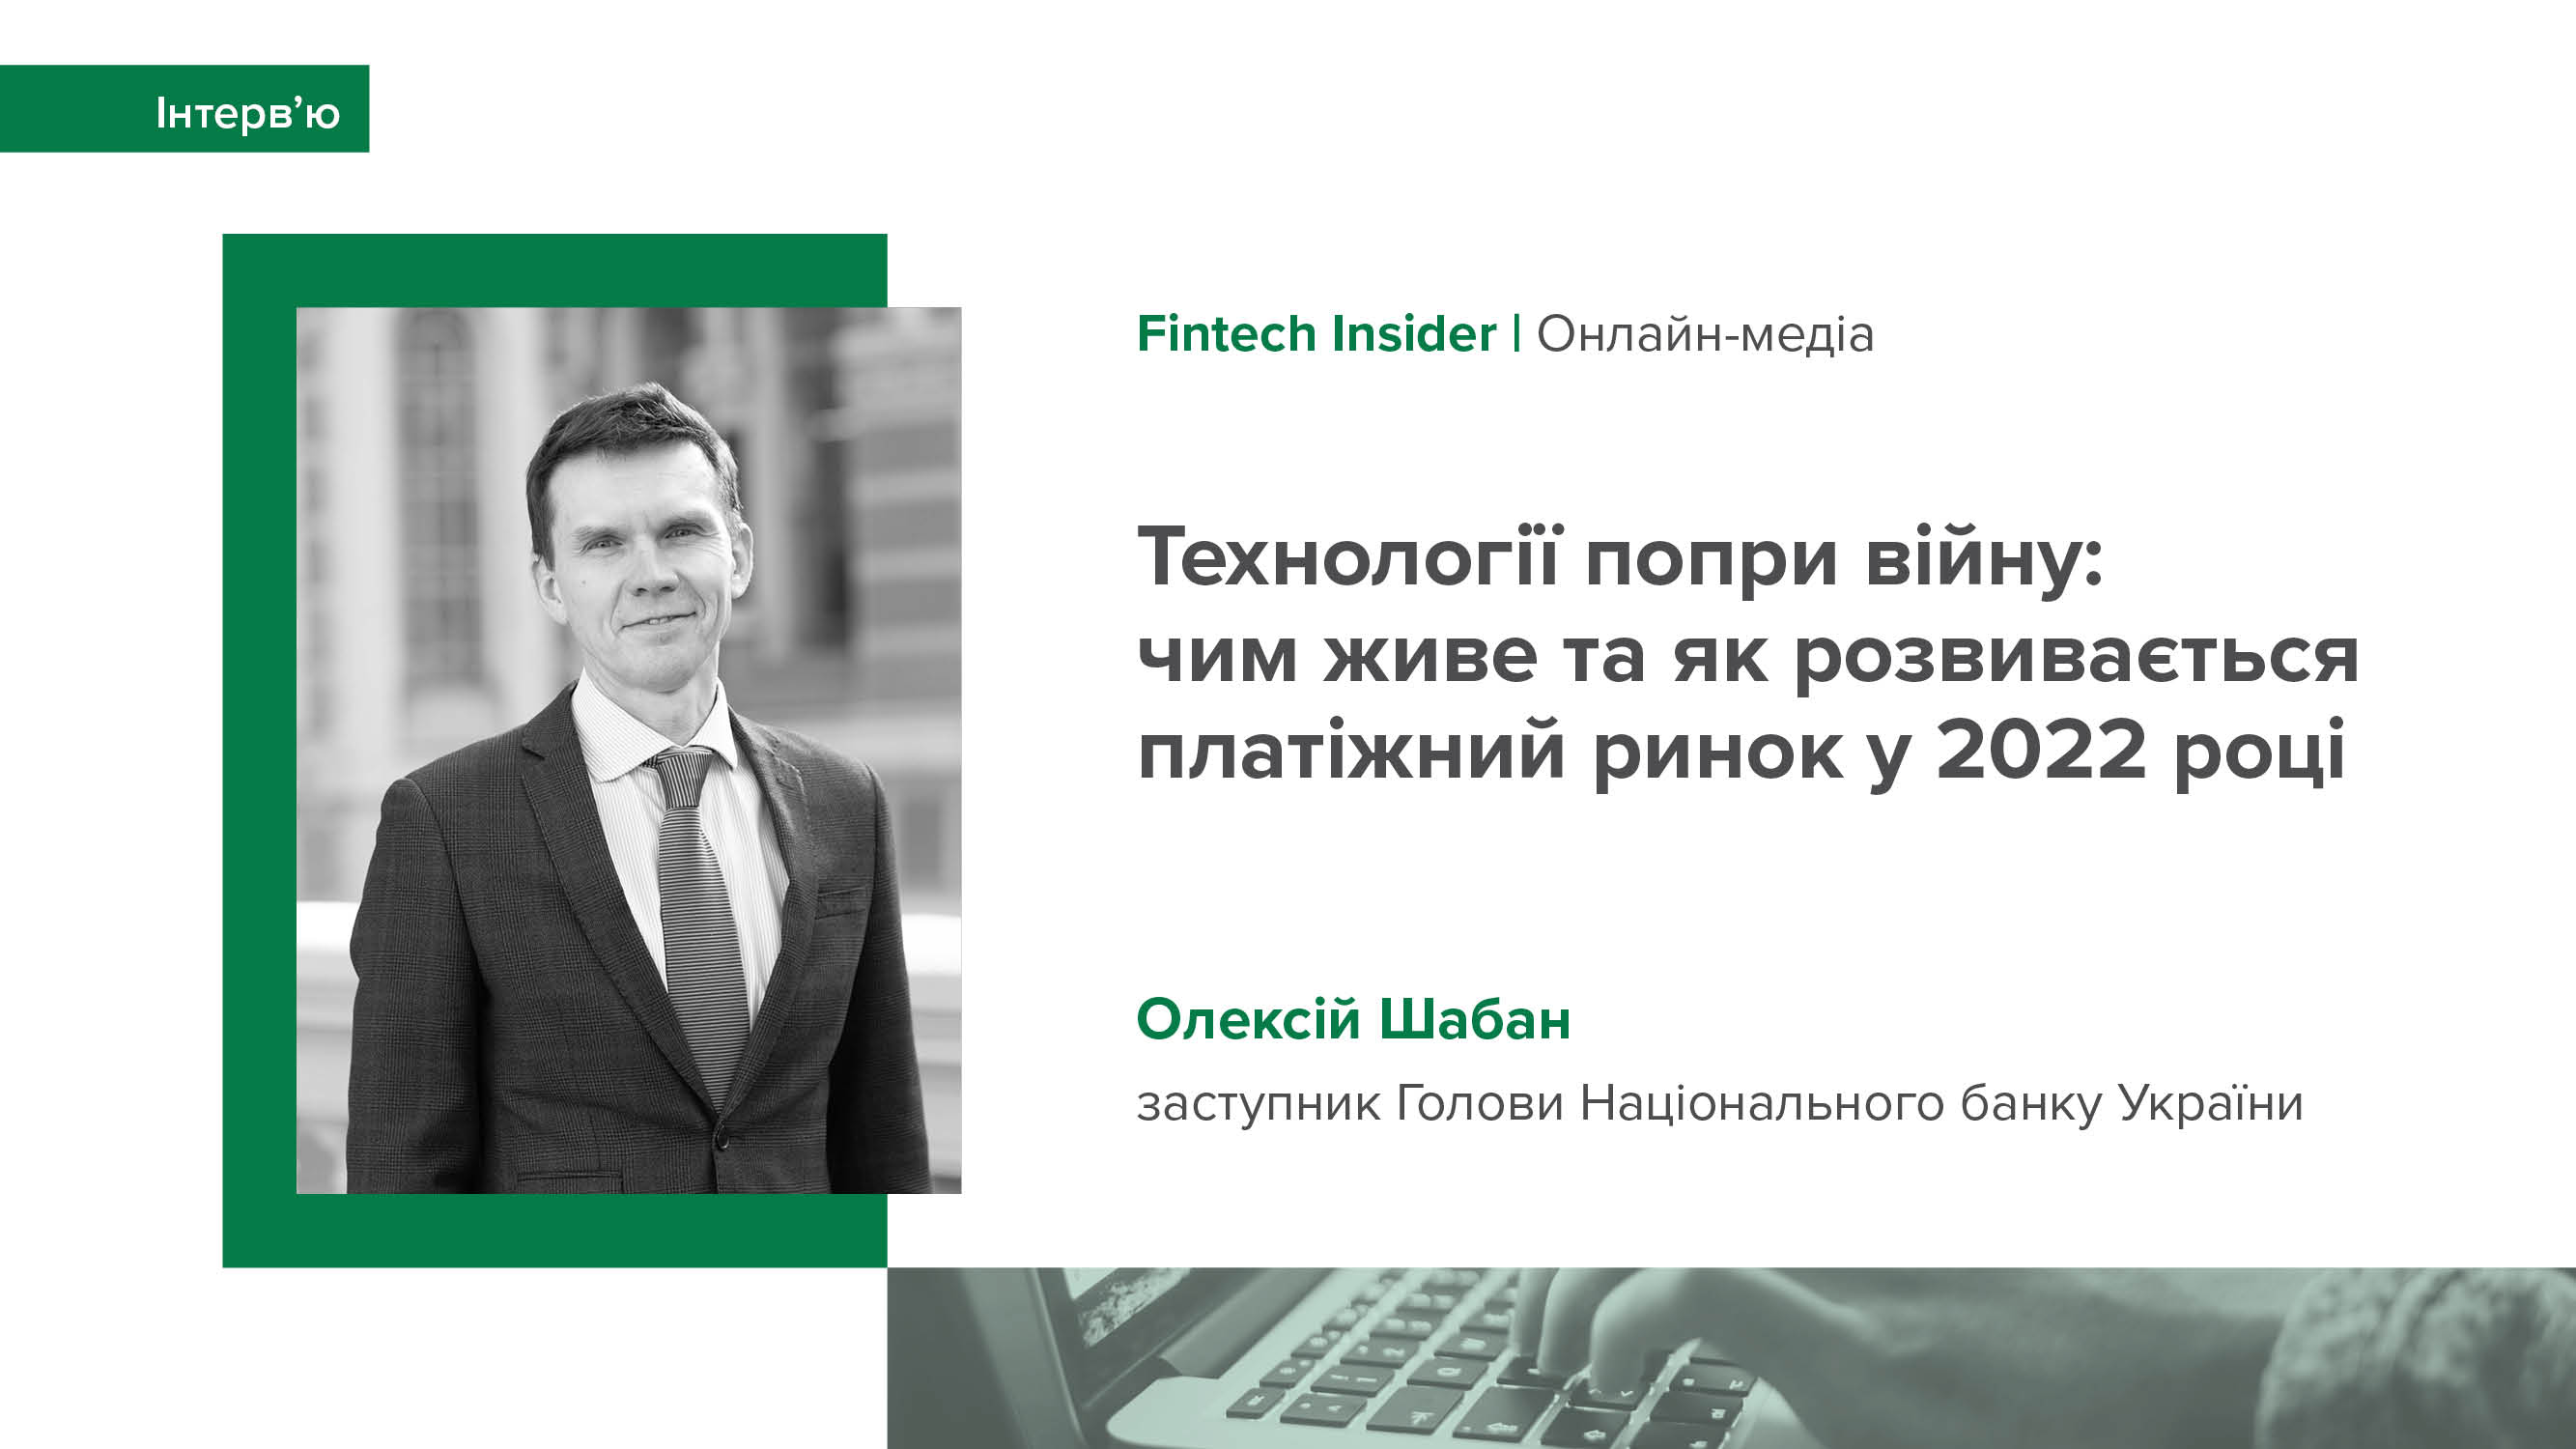 Інтерв’ю заступника Голови Національного банку Олексія Шабана онлайн-медіа Fintech Insider про розвиток платіжного ринку у 2022 році